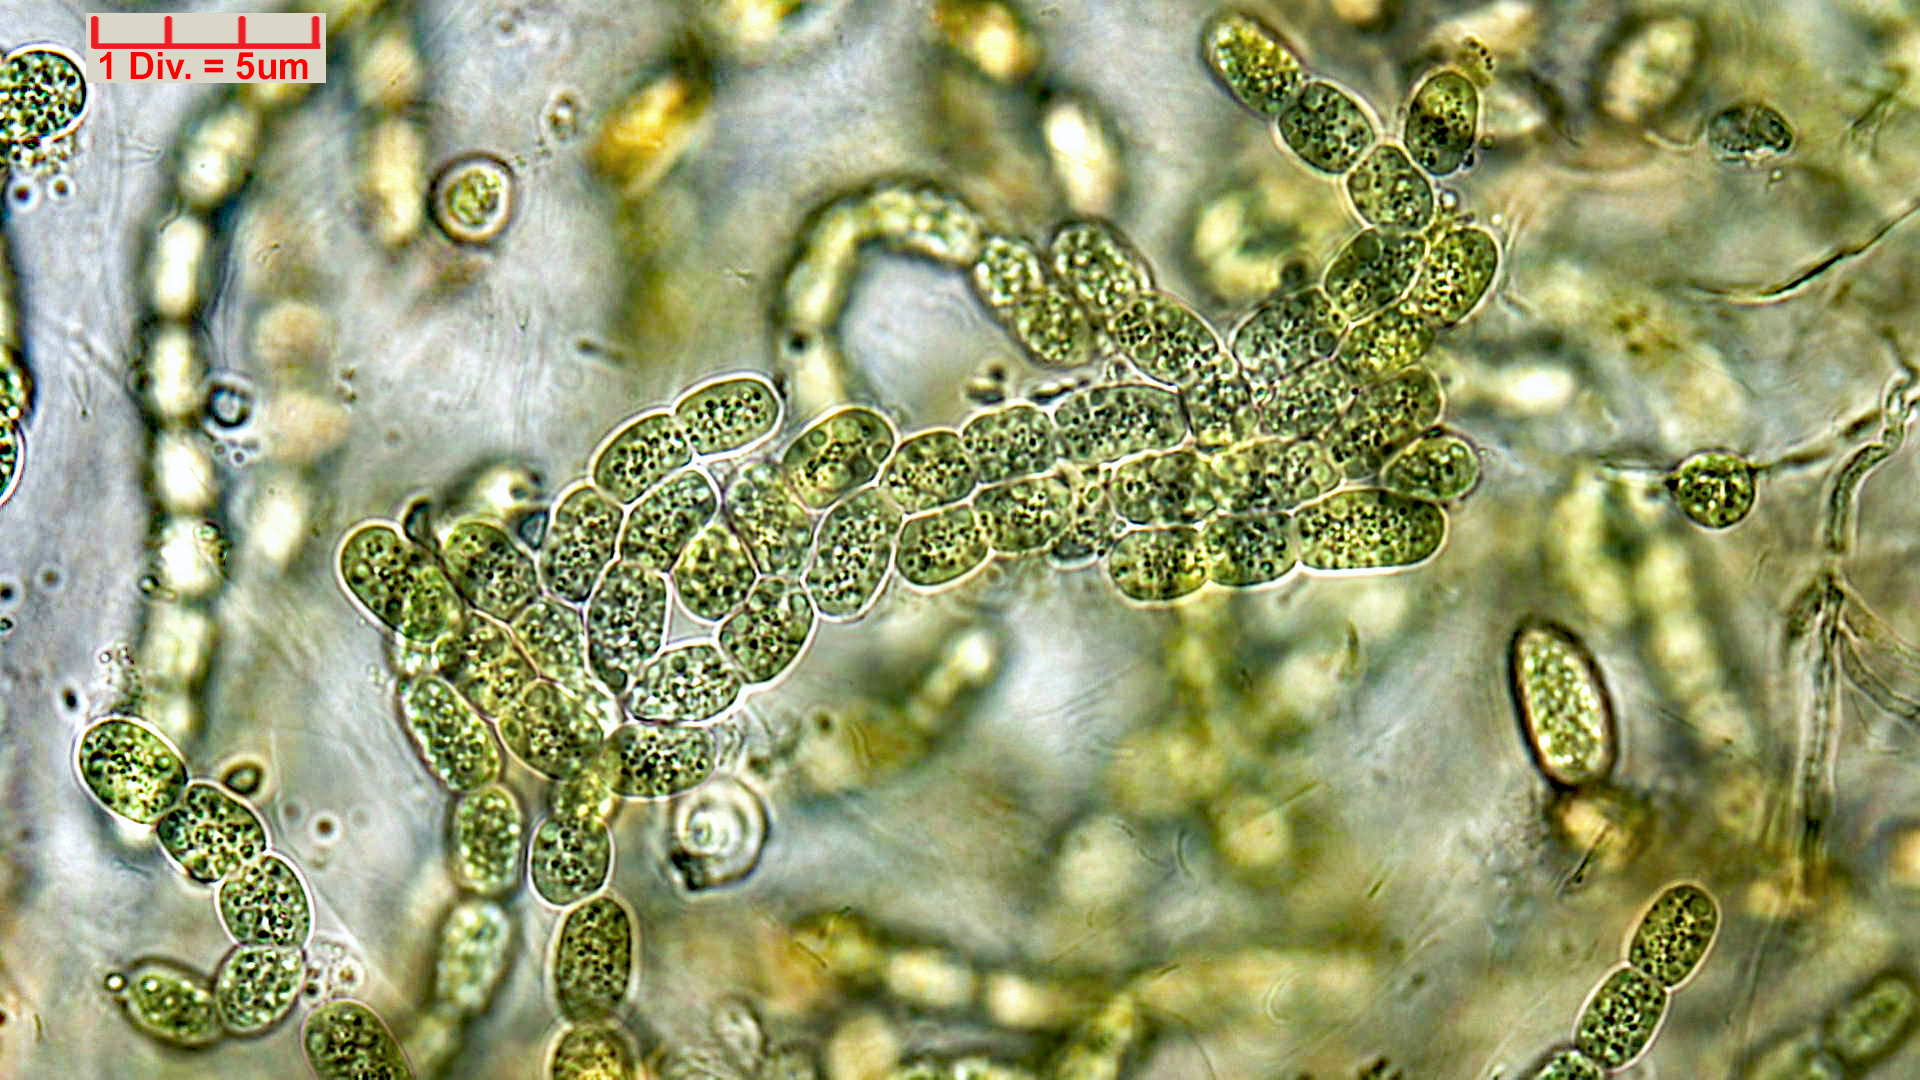 ./Cyanobacteria/Nostocales/Nostocaceae/Desmonostoc/muscorum/desmonostoc-muscorum-592.jpg